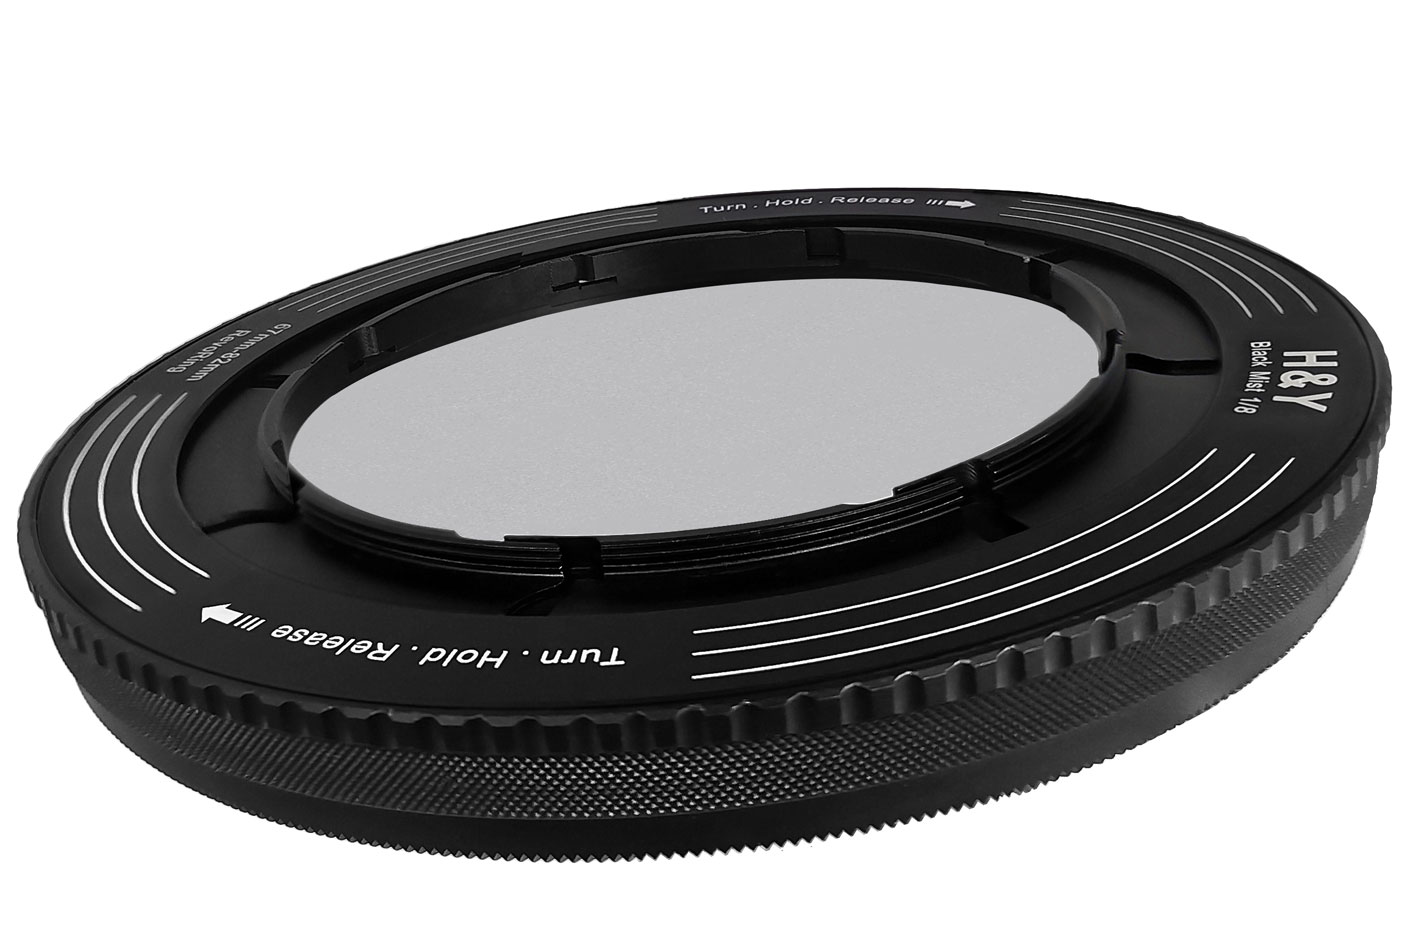 H&Y REVORING Black Mist Filter: one filter for multiple lenses